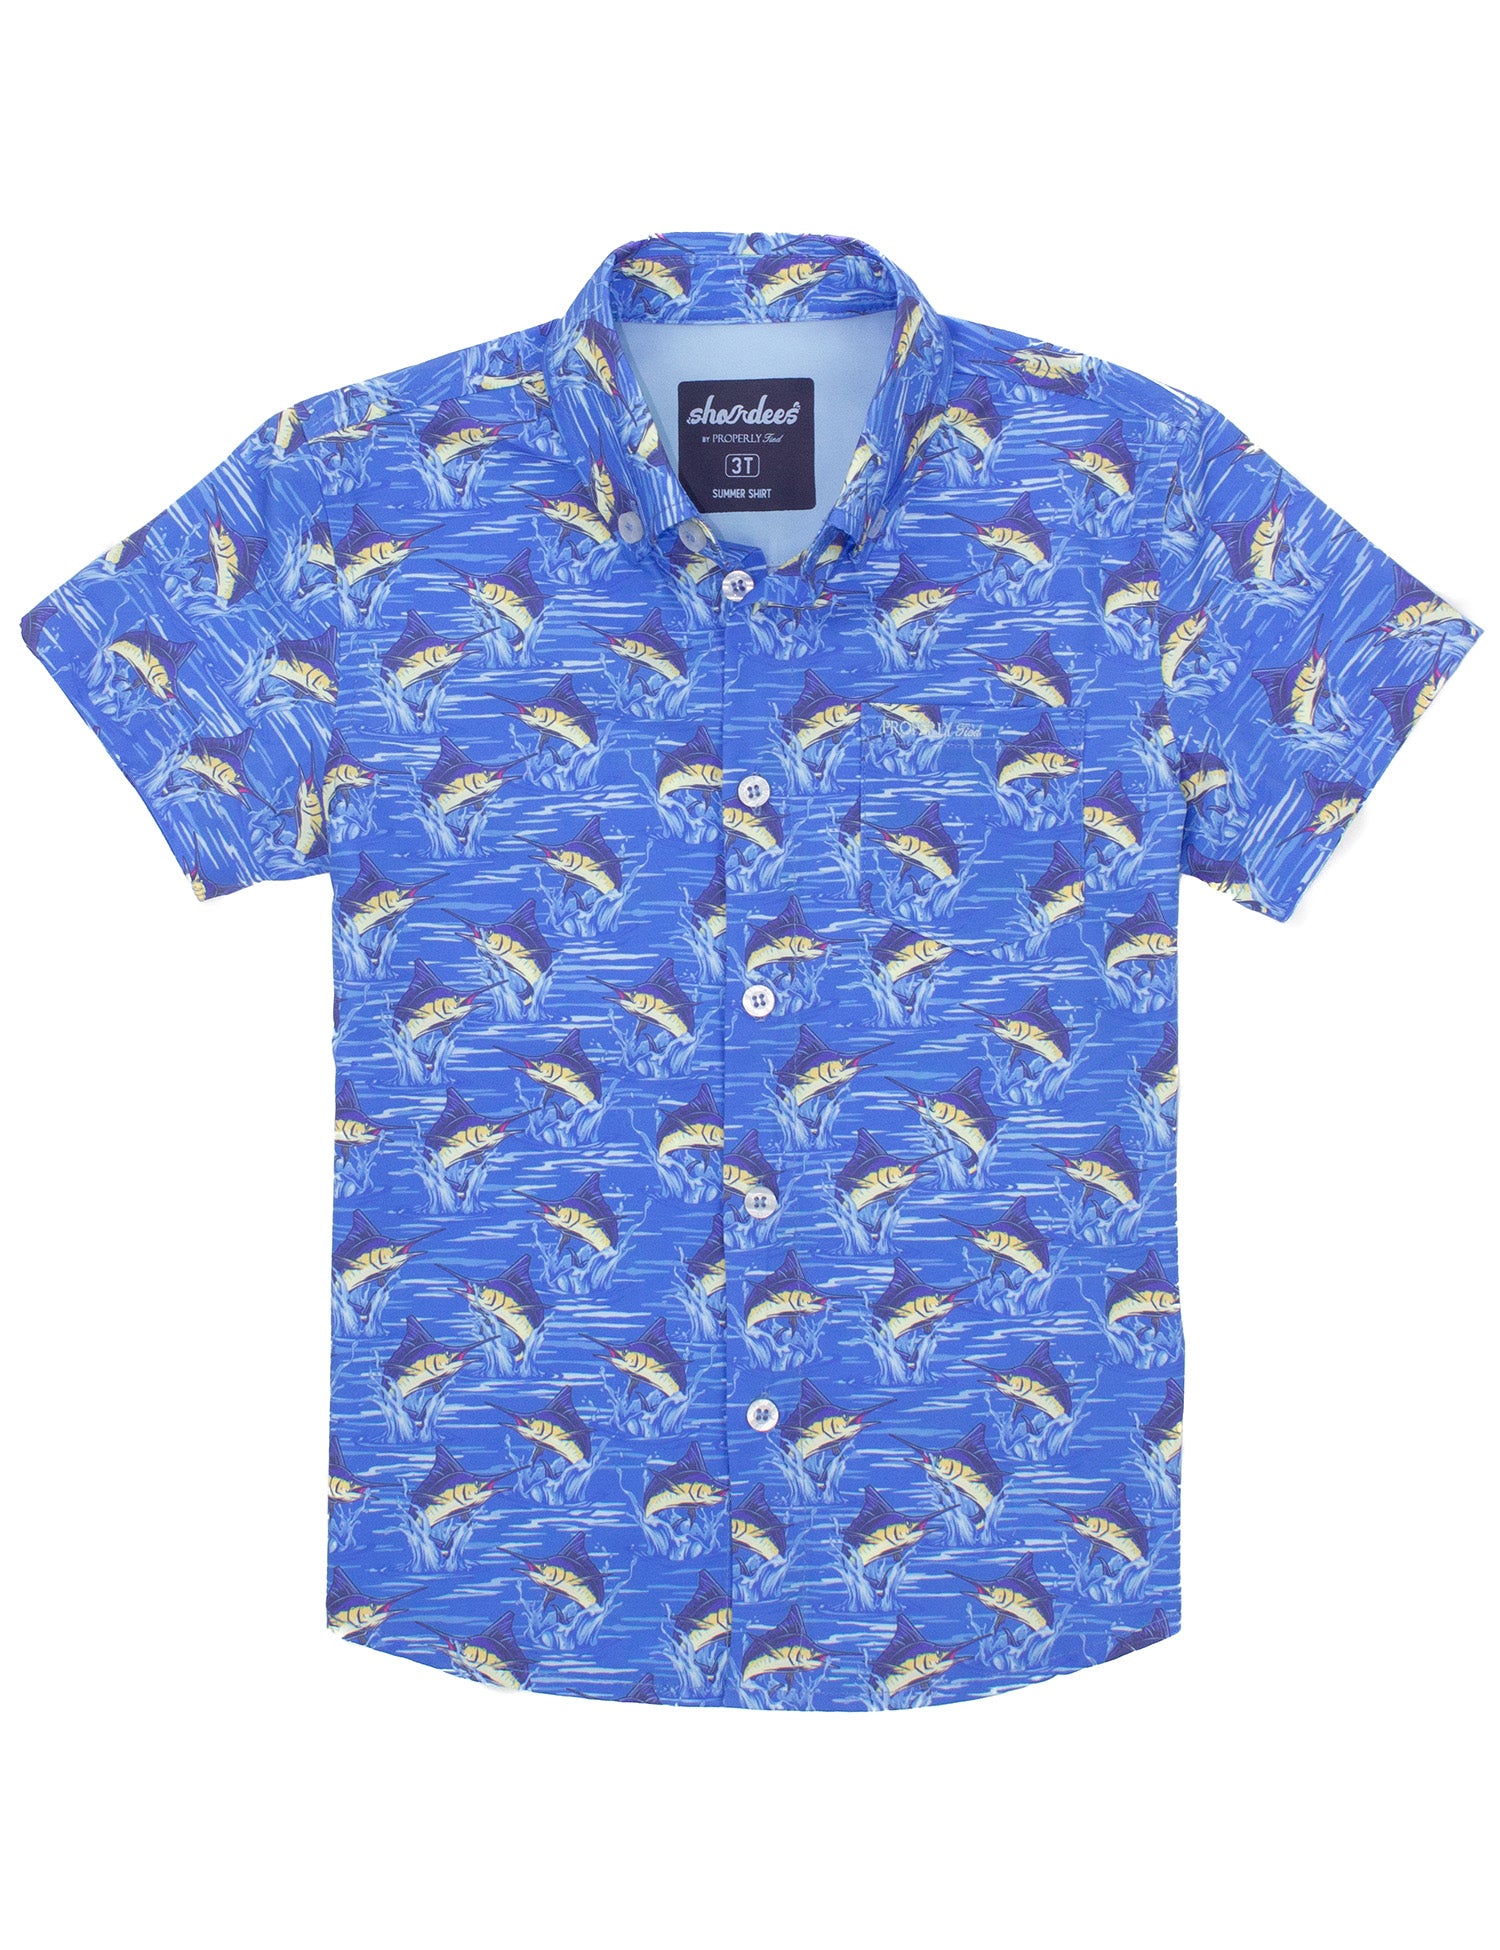 Boys Shordees Summer Shirt Marlin